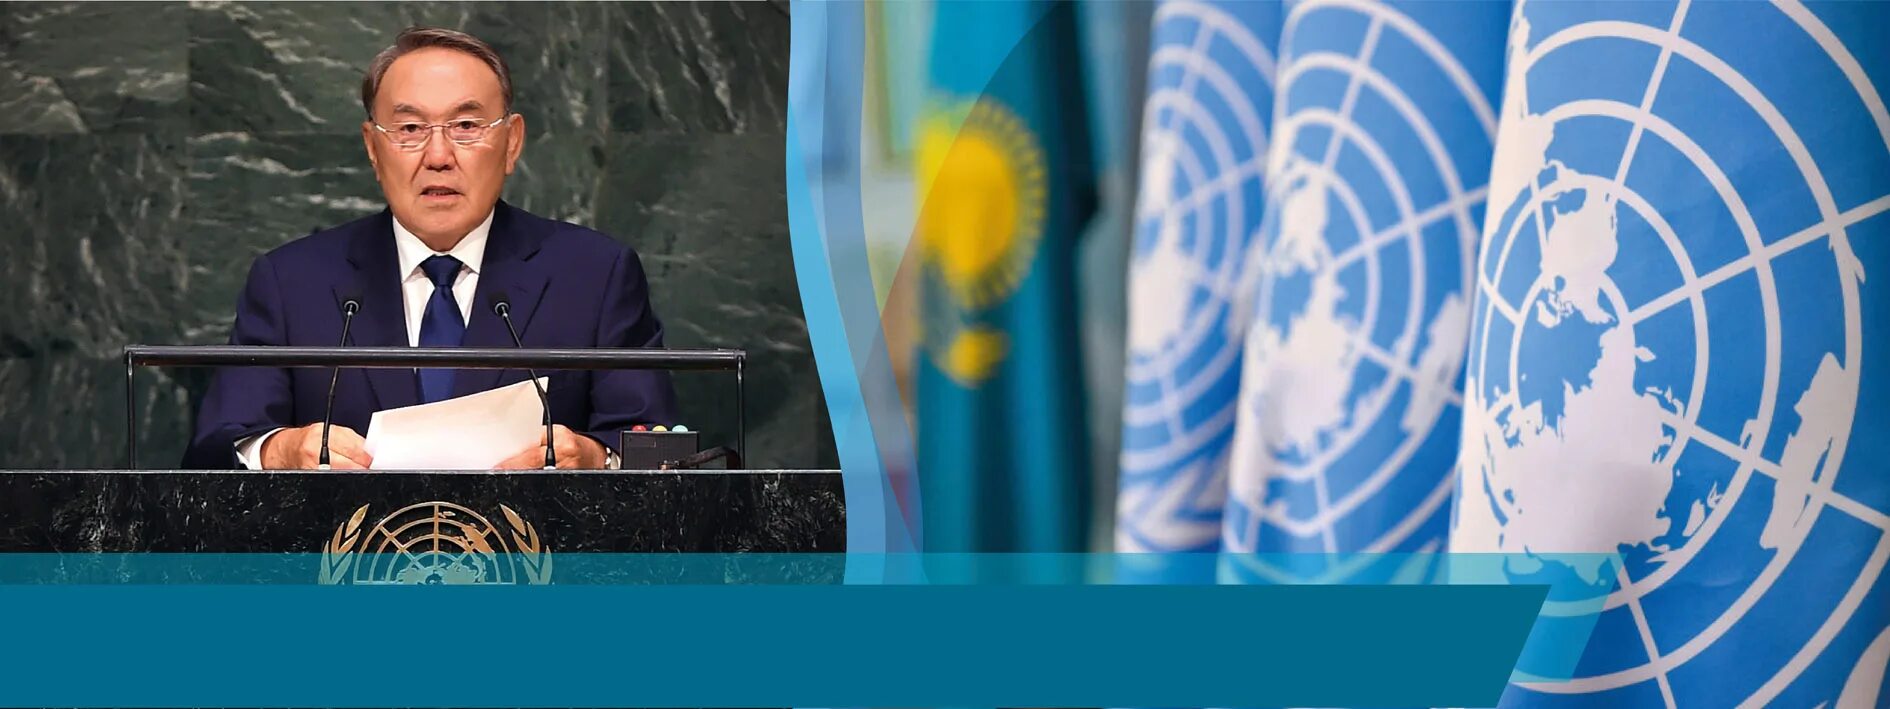 Назарбаев 1992. Казахстан в Совете безопасности ООН. Саммит тысячелетия ООН 2000. Председатель ООН 2000. Оон показала